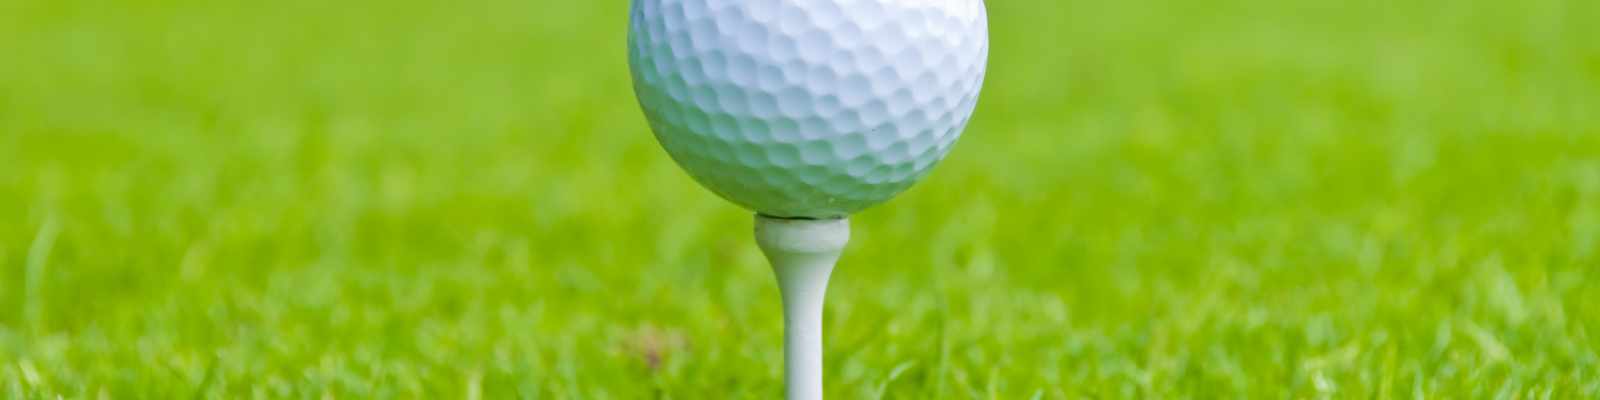 Golfball auf Tee (photo by karamysh / Shutterstock.com)